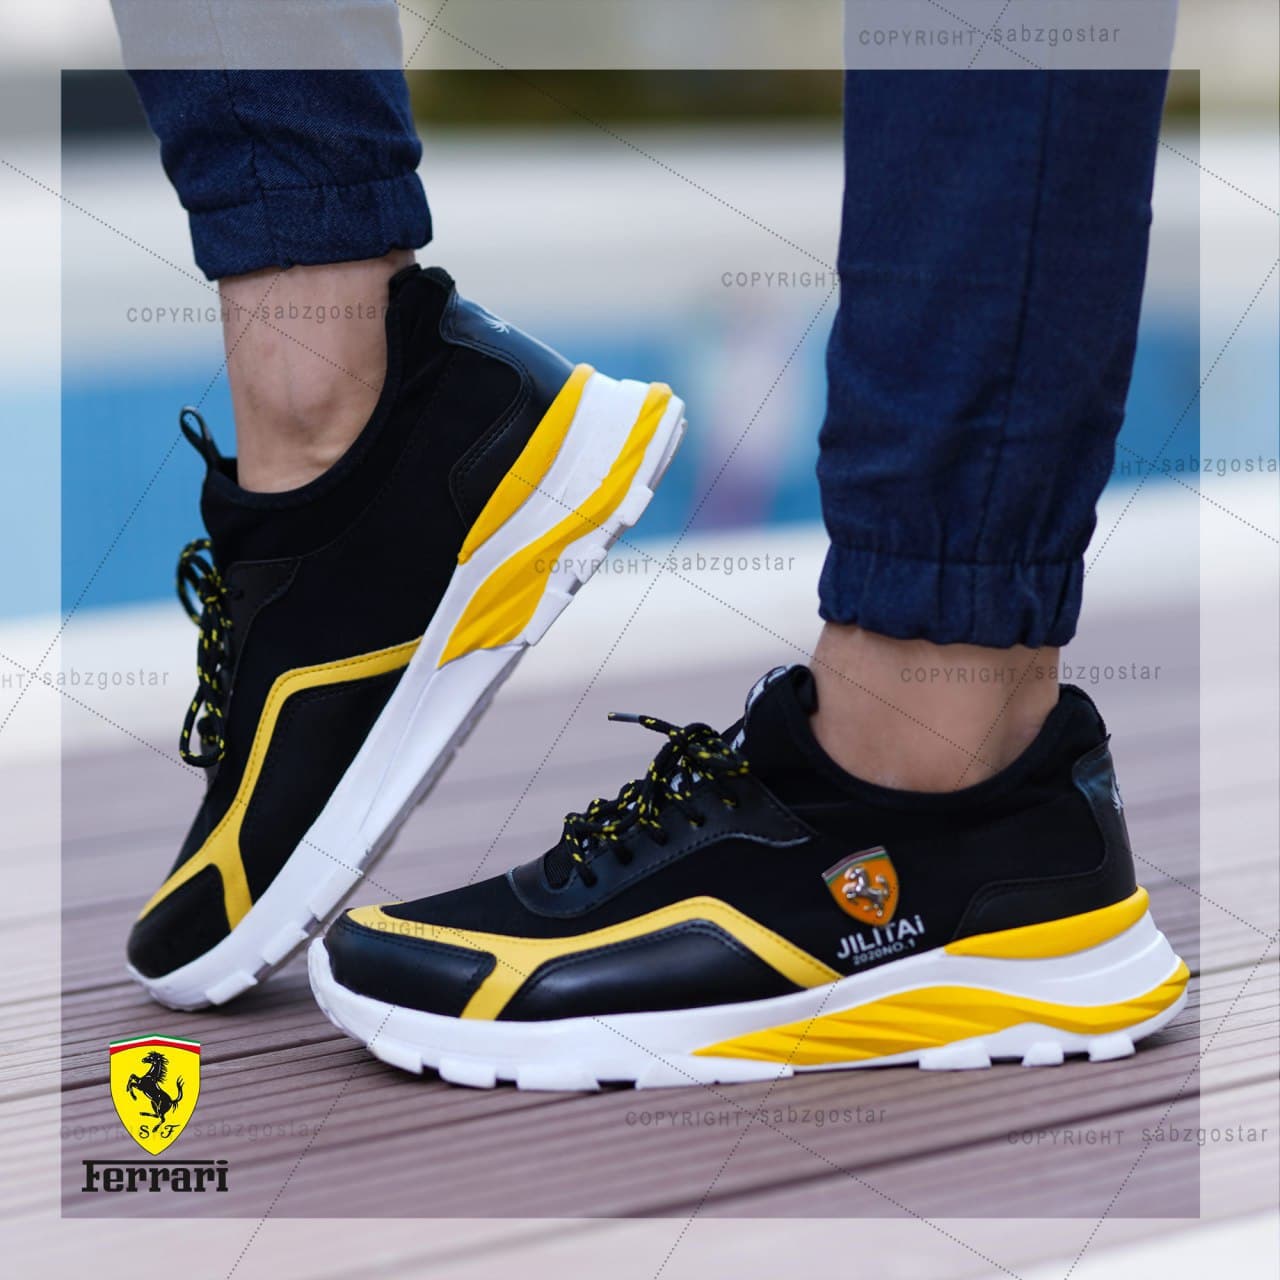 کفش مردانه Ferrari مدل JILITAi(زرد و مشکی)